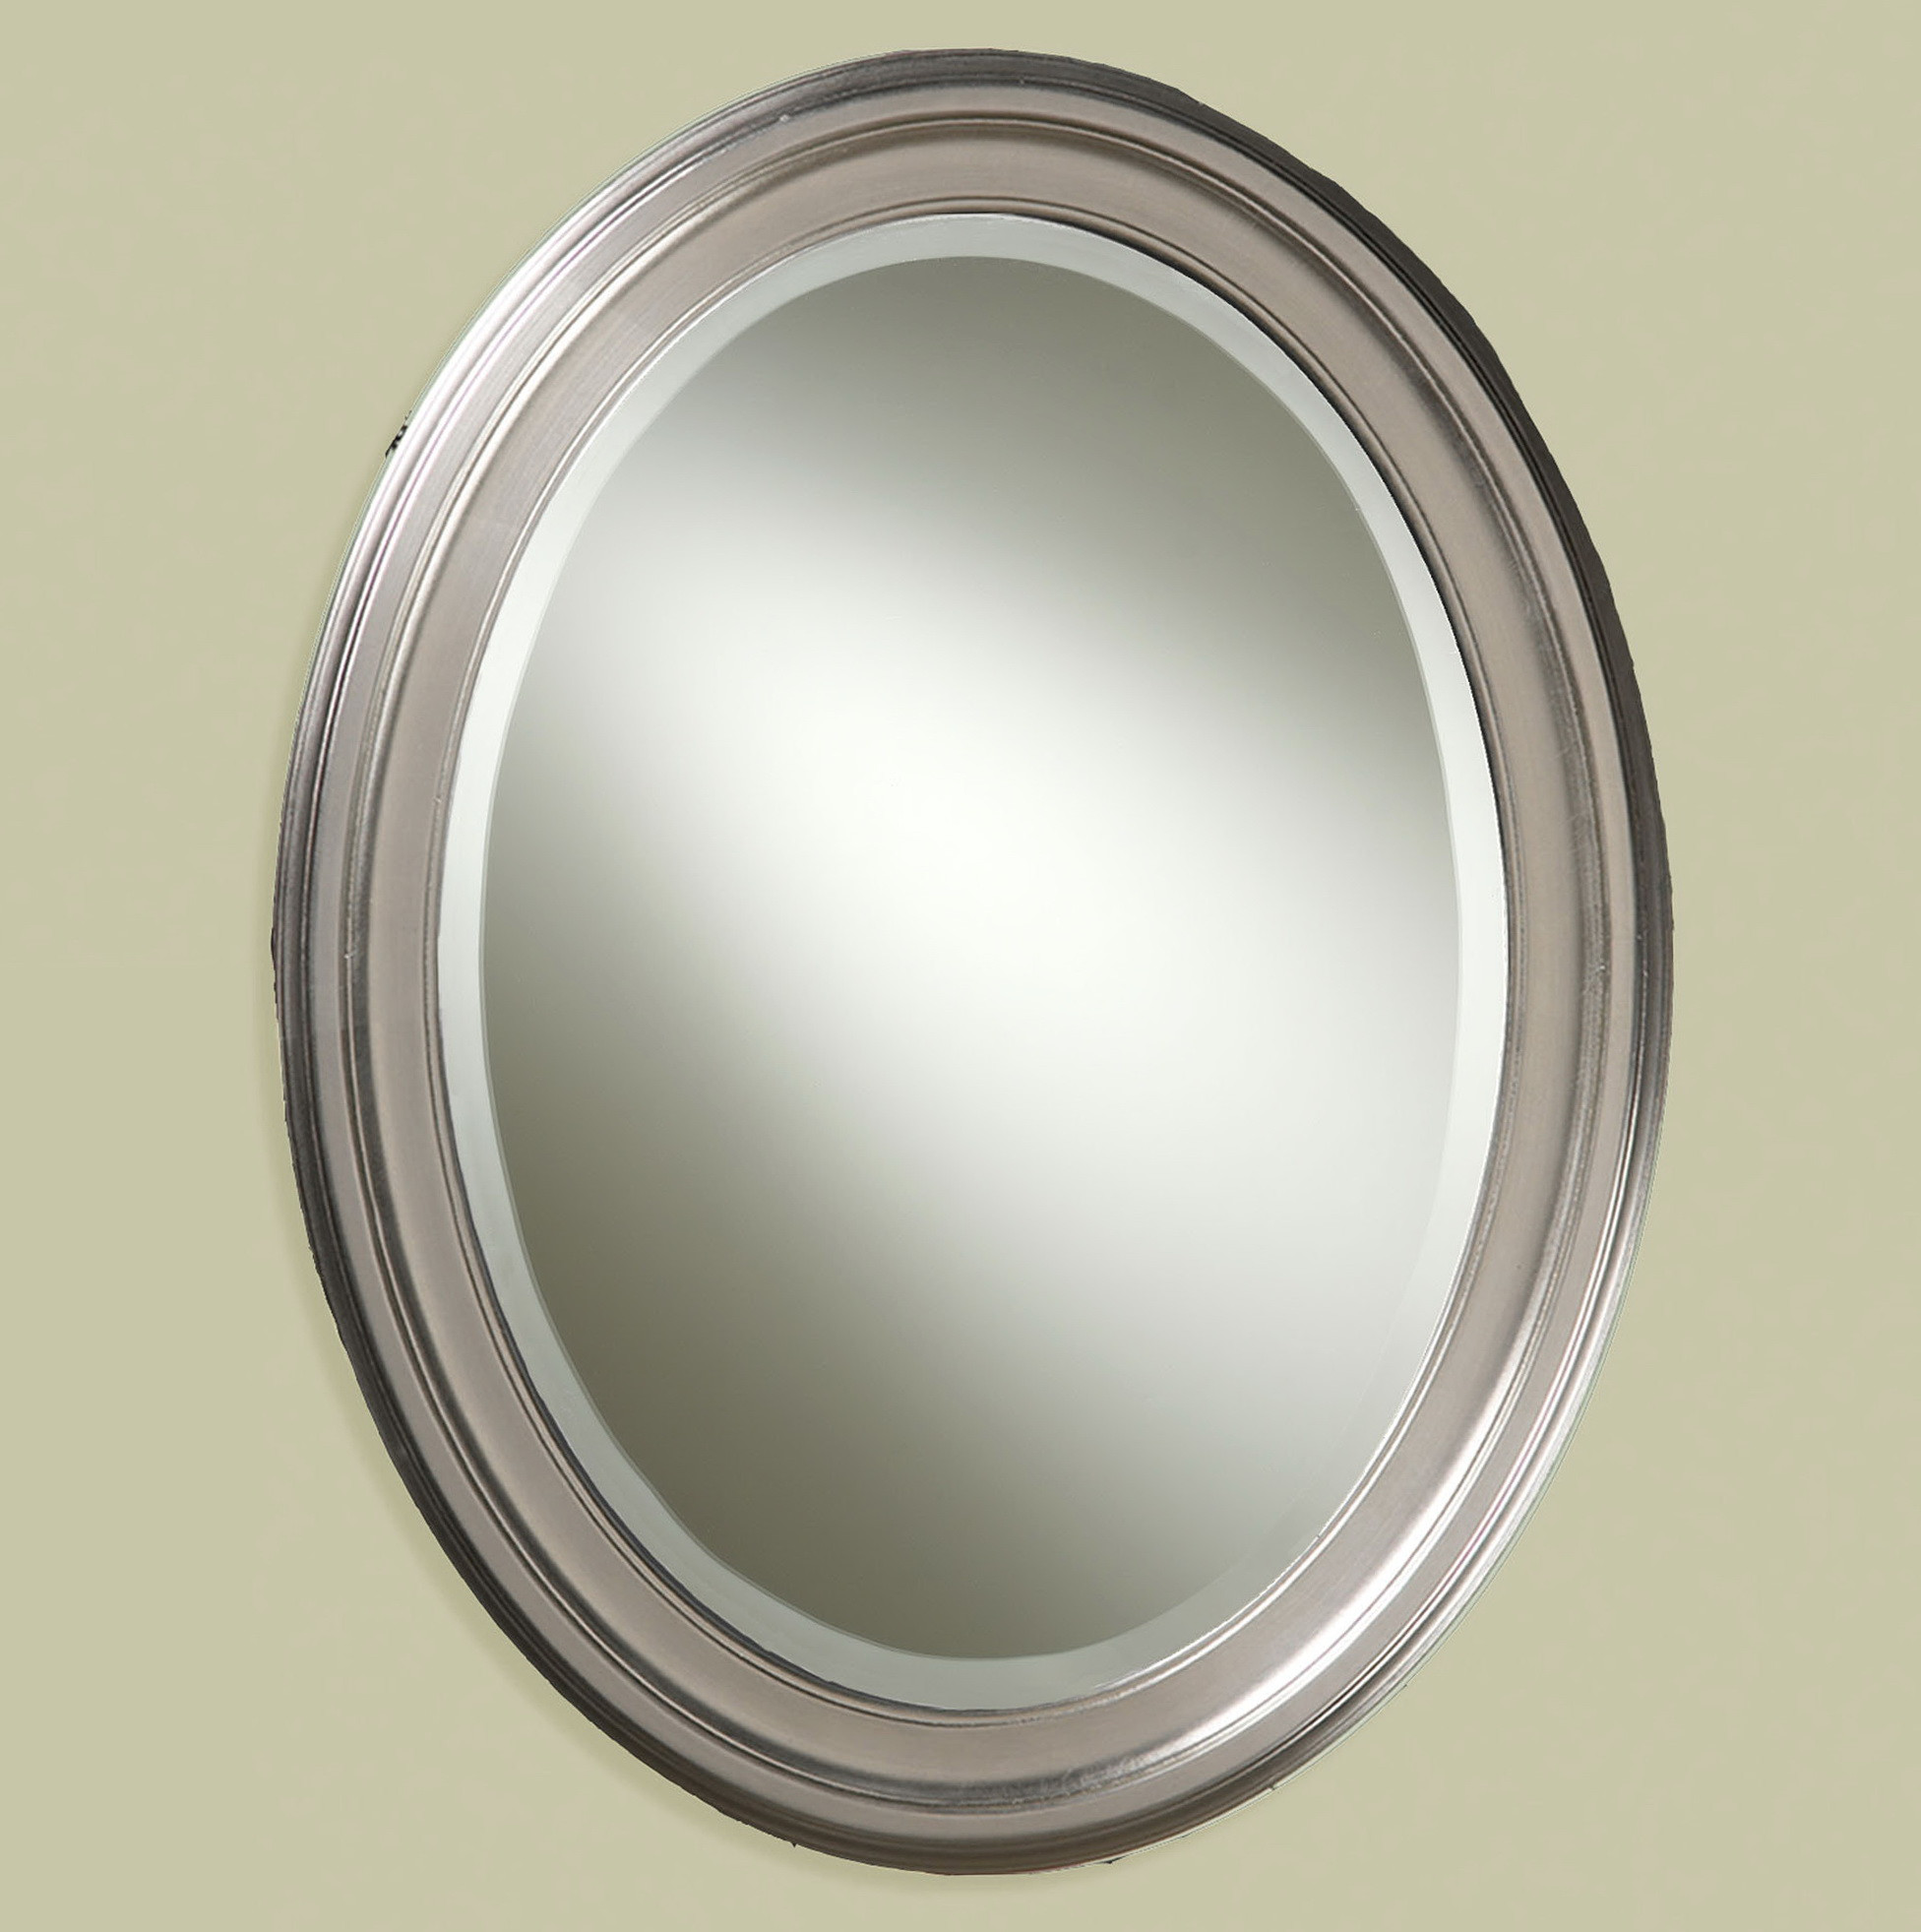 Polished Nickel Bathroom Mirror
 Oval Bathroom Mirrors Brushed Nickel